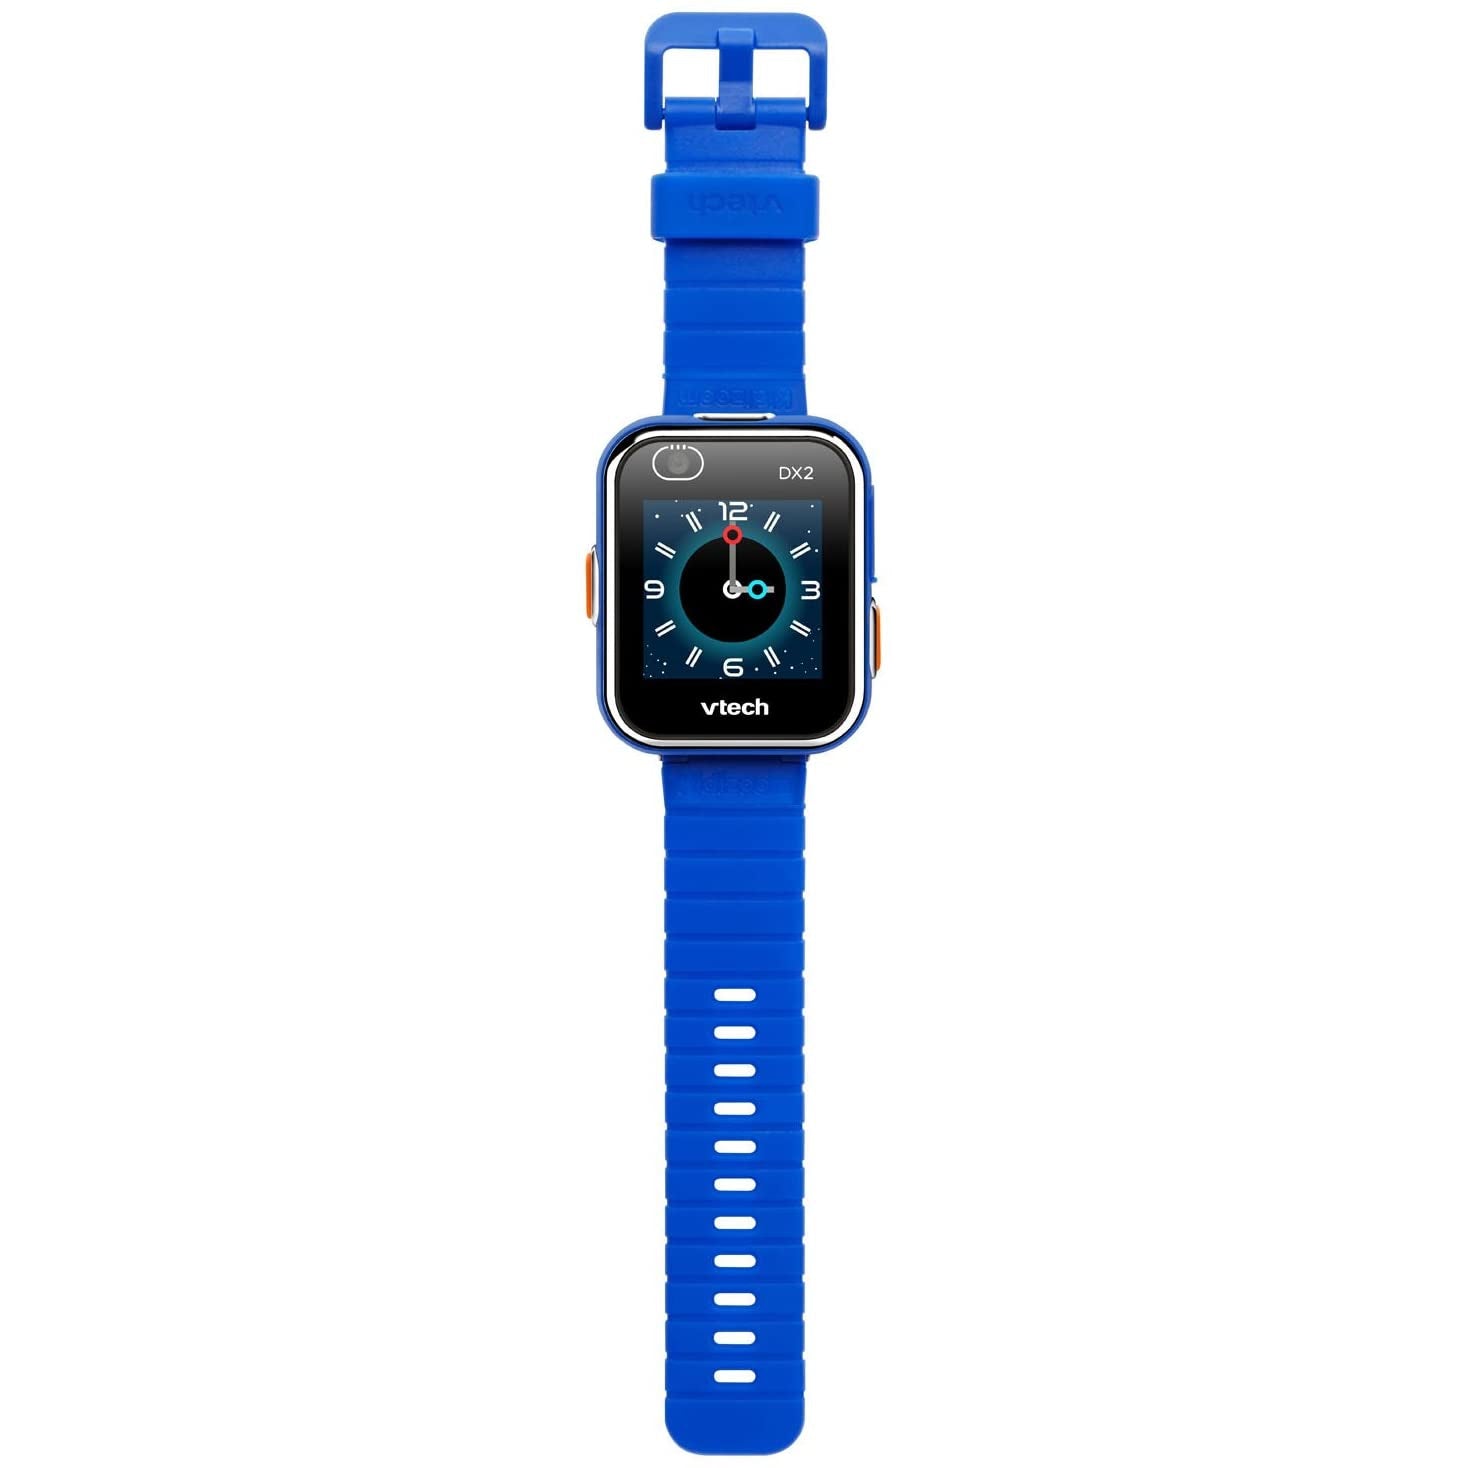 VTech 193803 Kidizoom Smart Watch DX2 Toy, Blue - Refurbished Excellent